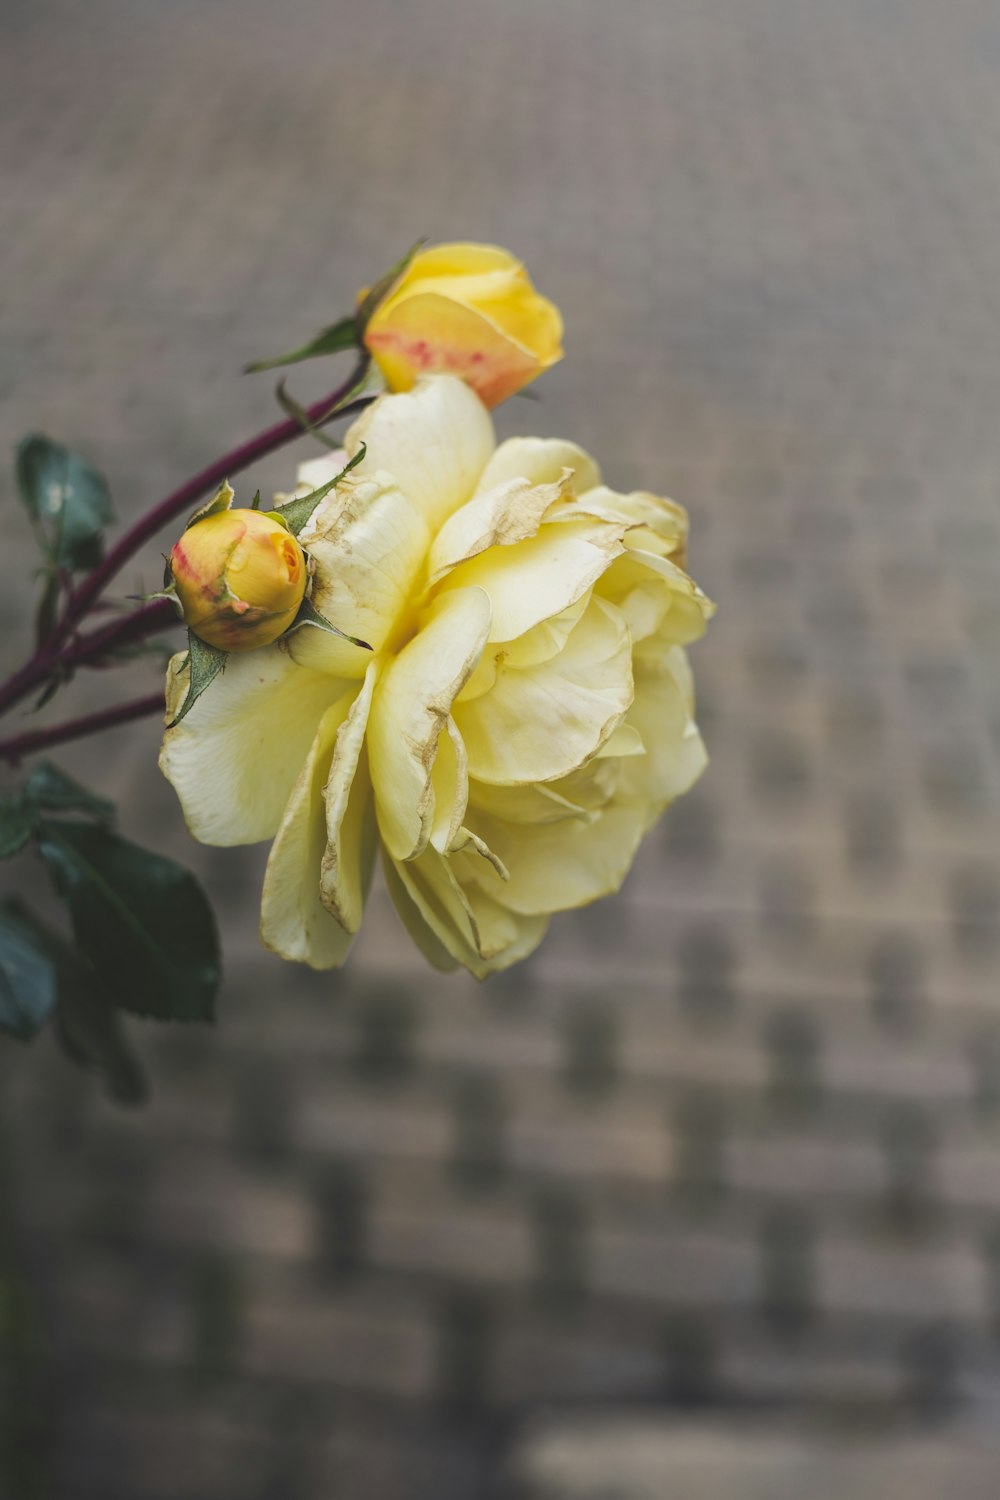 rosa amarela em flor durante o dia